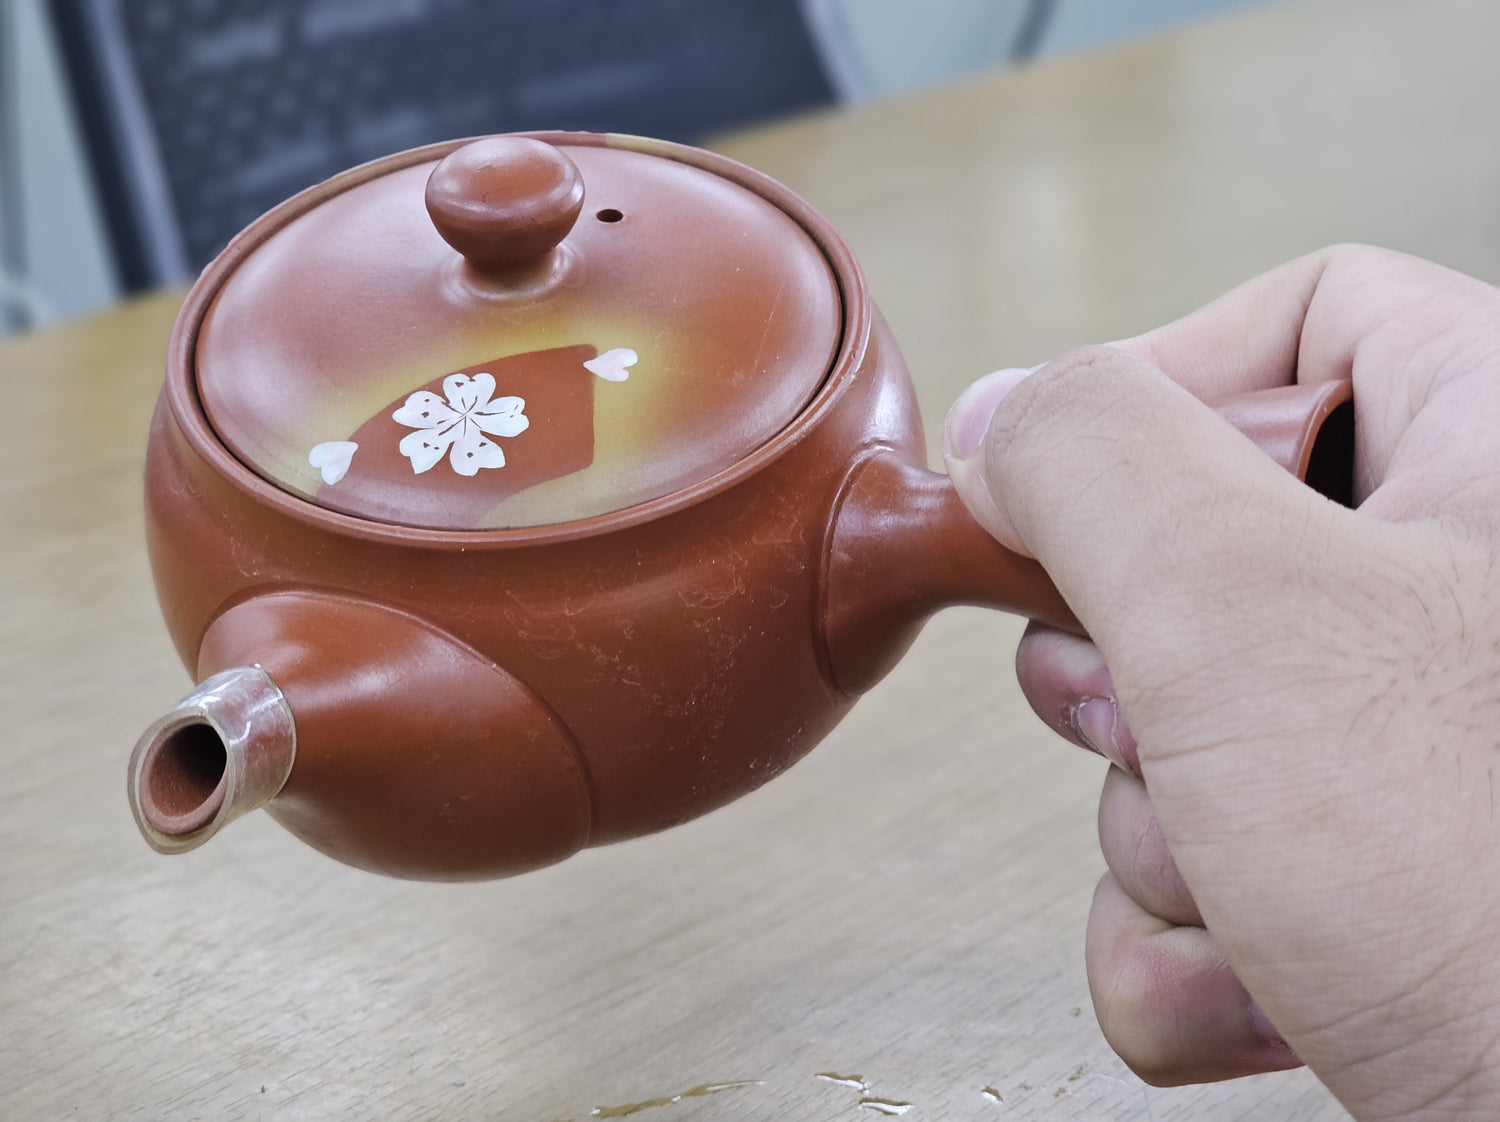 Fusensaku Sakura no Hana Kyusu - Japanese Teapot